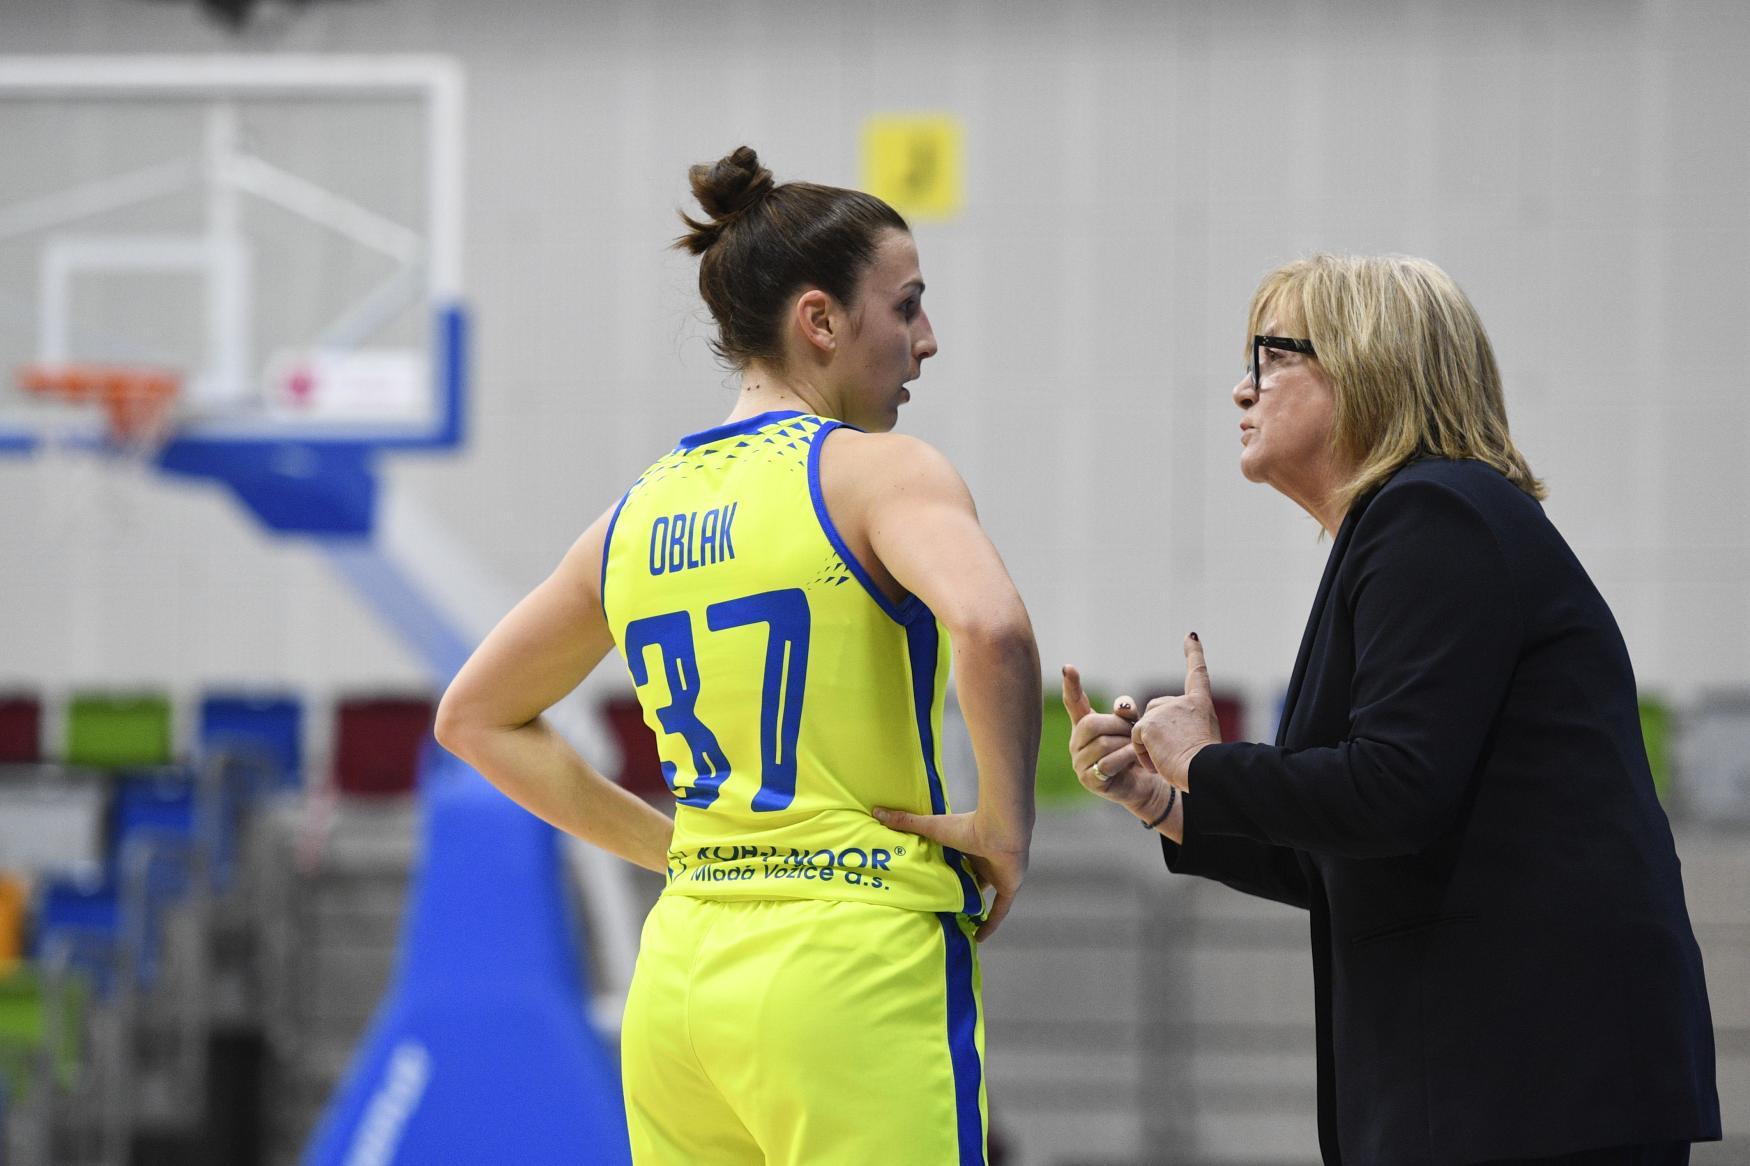 Natália Hejková mluví k hráčce basketbalu v basketbalové hale